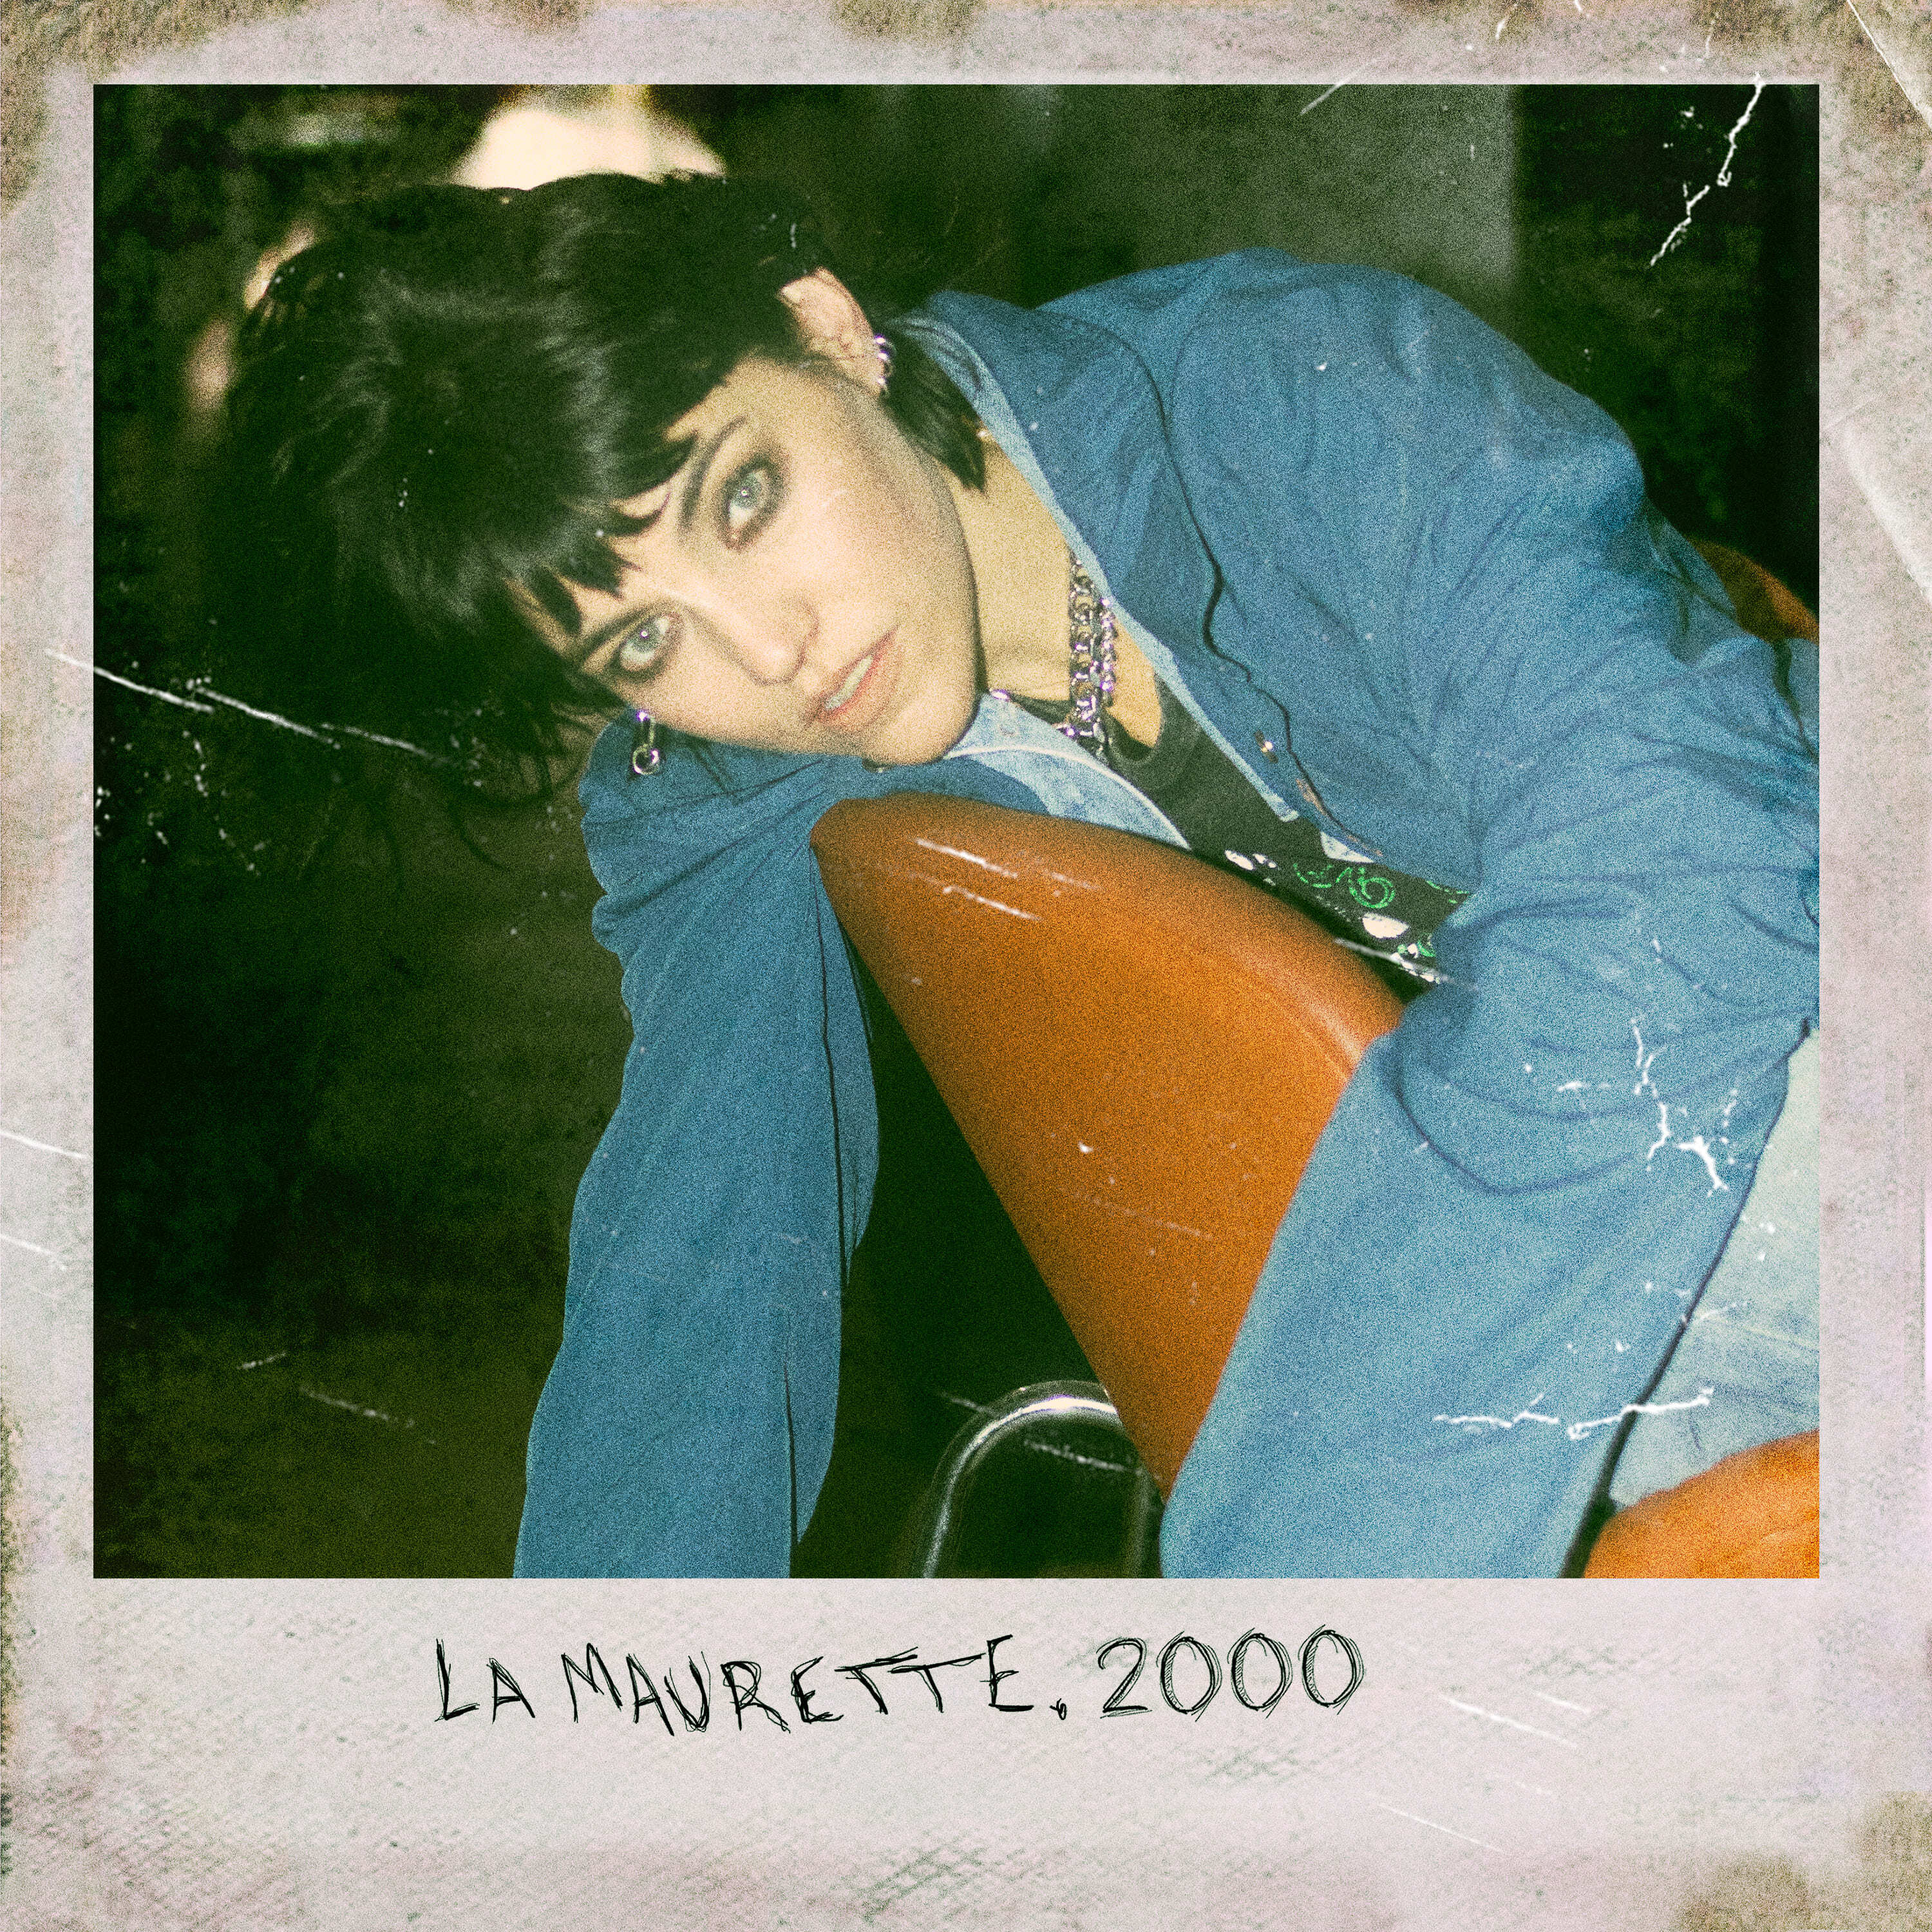 LA MAURETTE presenta 2000, su nuevo single y videoclip en MUSICA.  Chicas Rockeras!